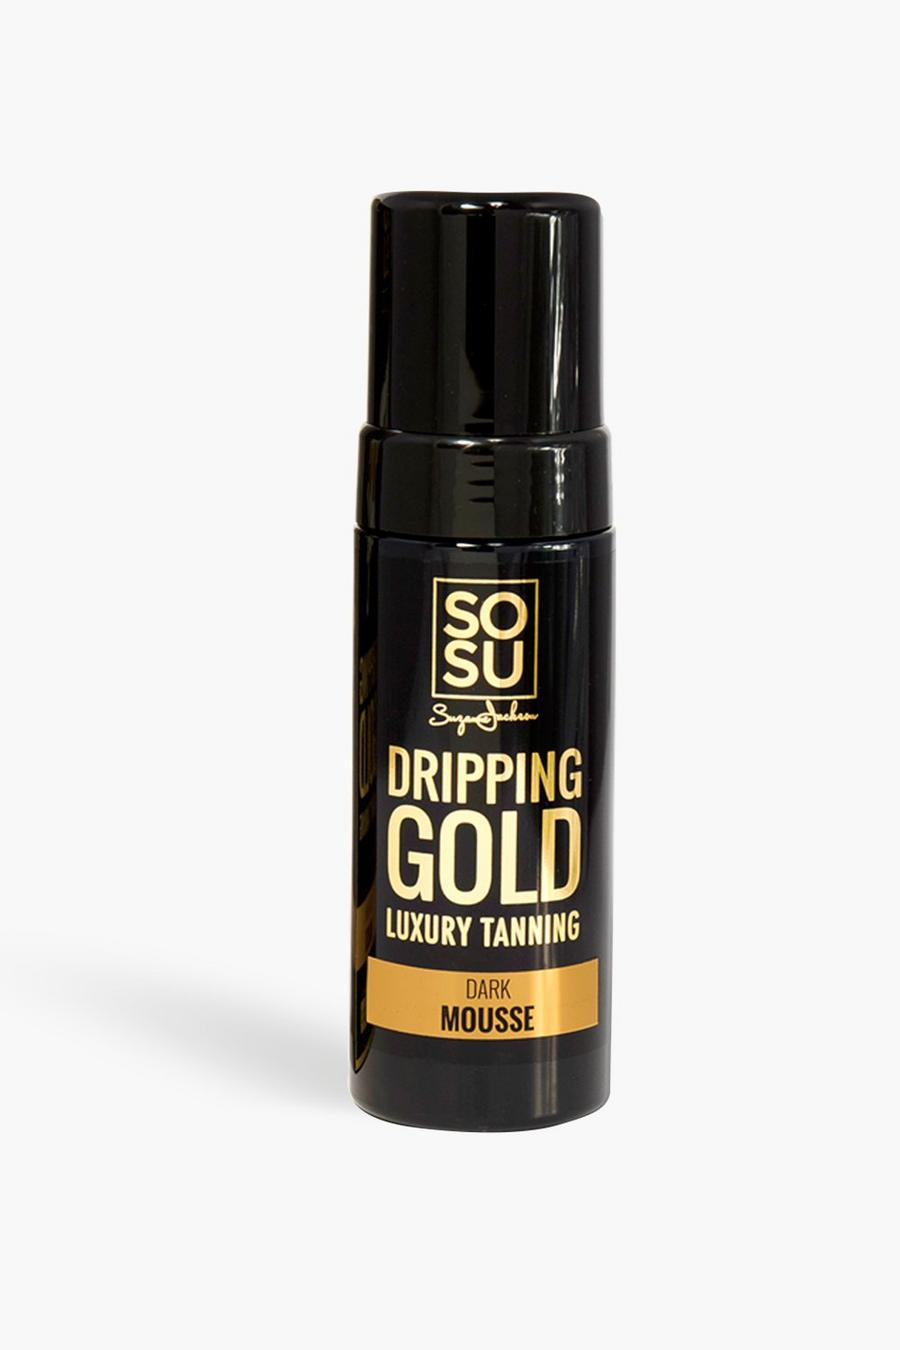 שחור מוס כהה לשיזוף SOSU Dripping Gold image number 1